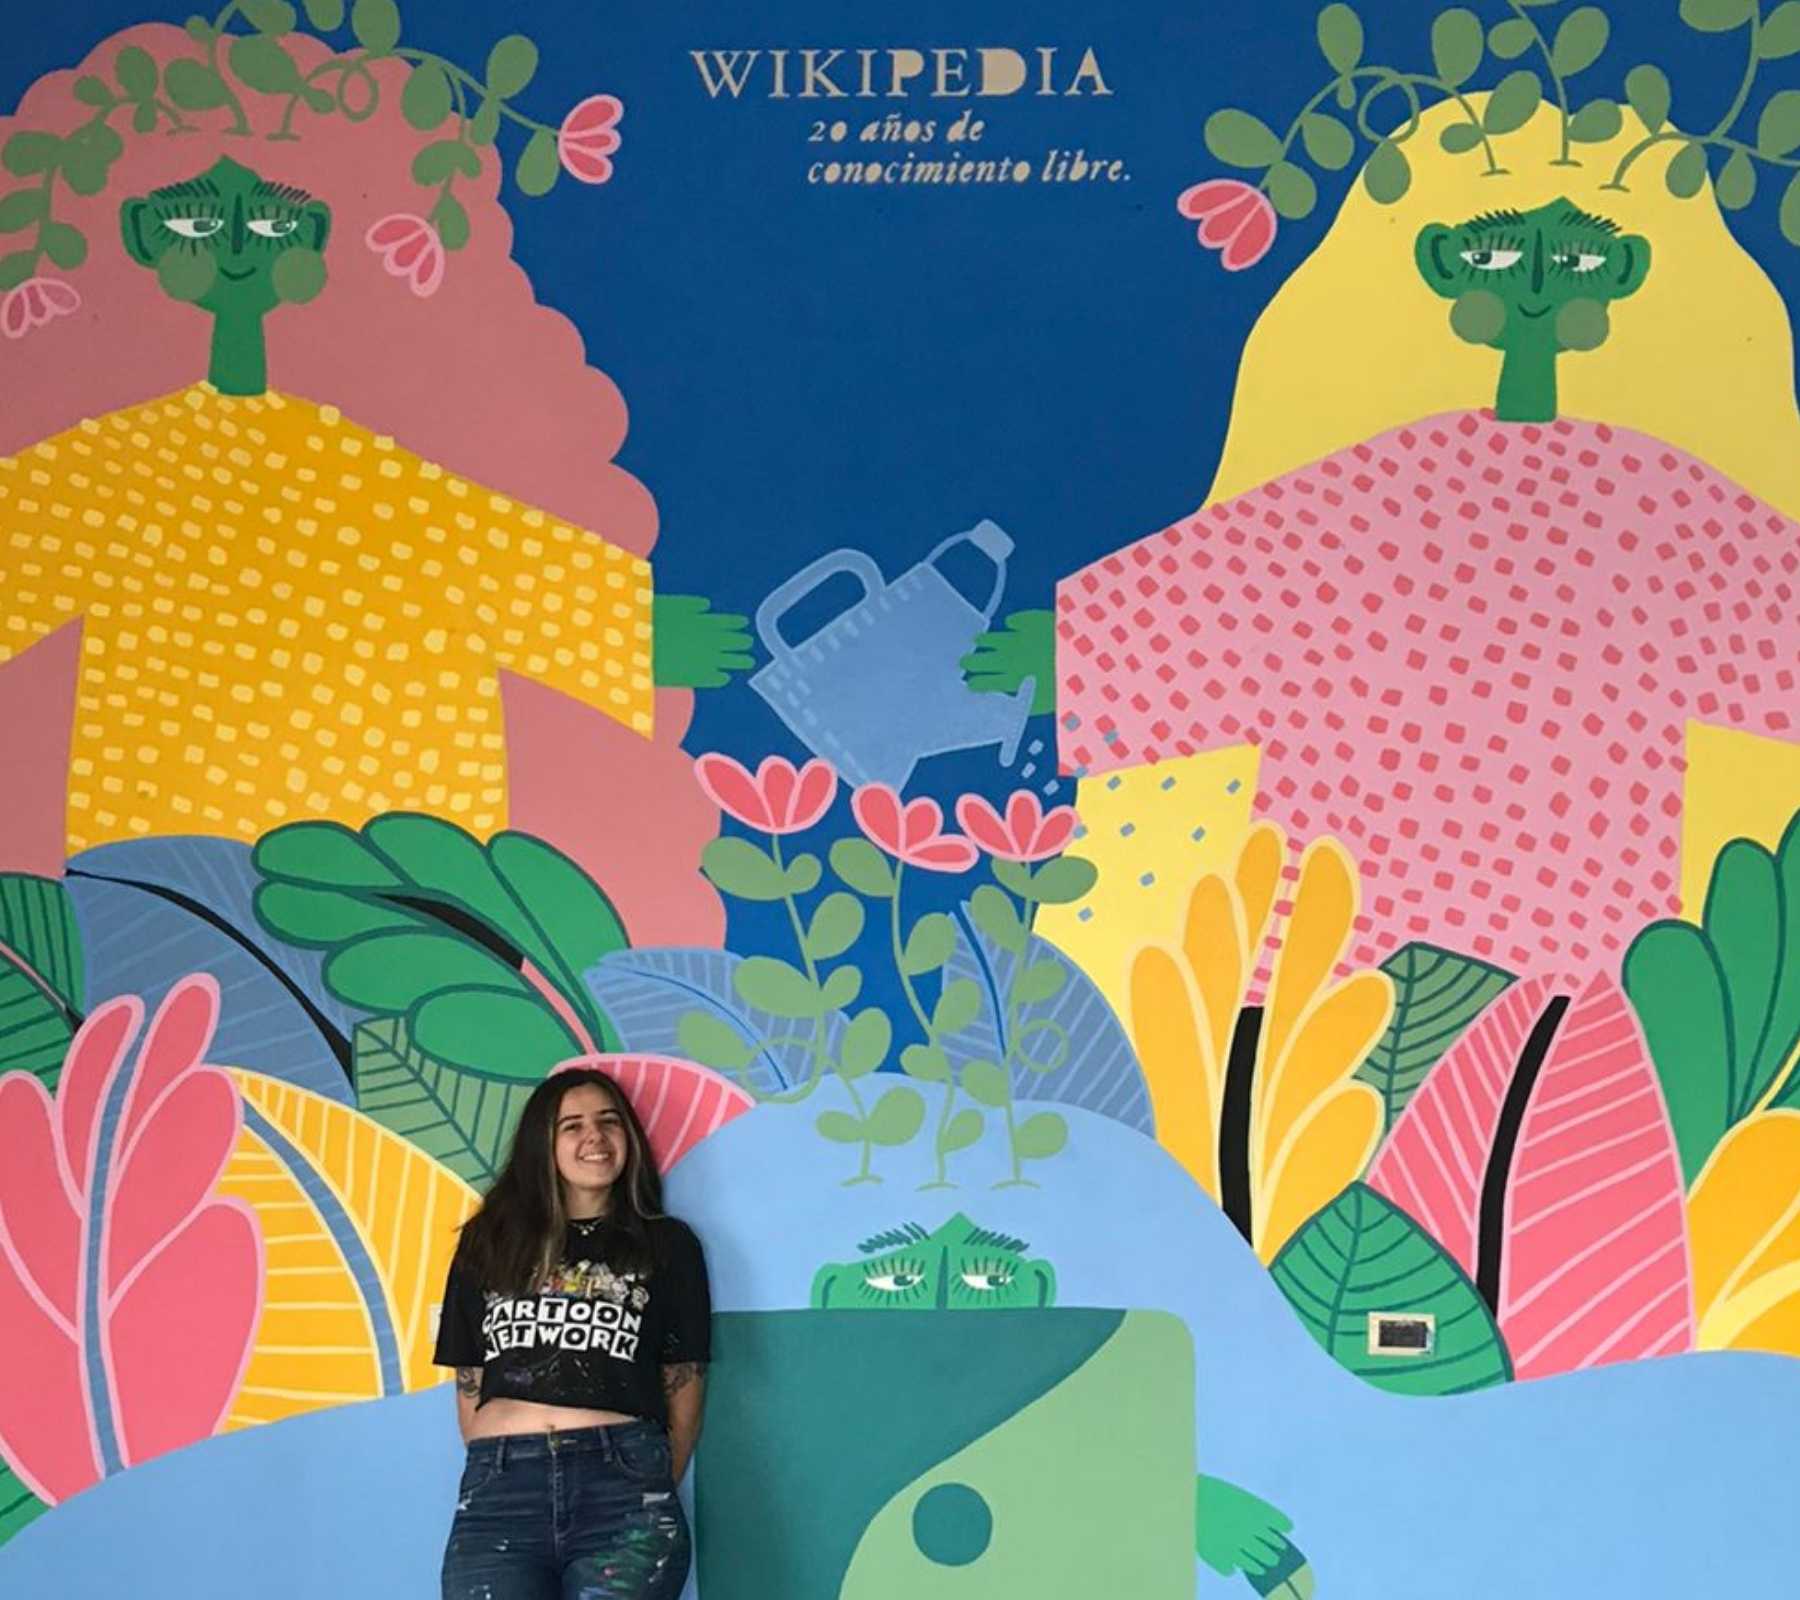 sofia altieri posa en su mural wikipedia